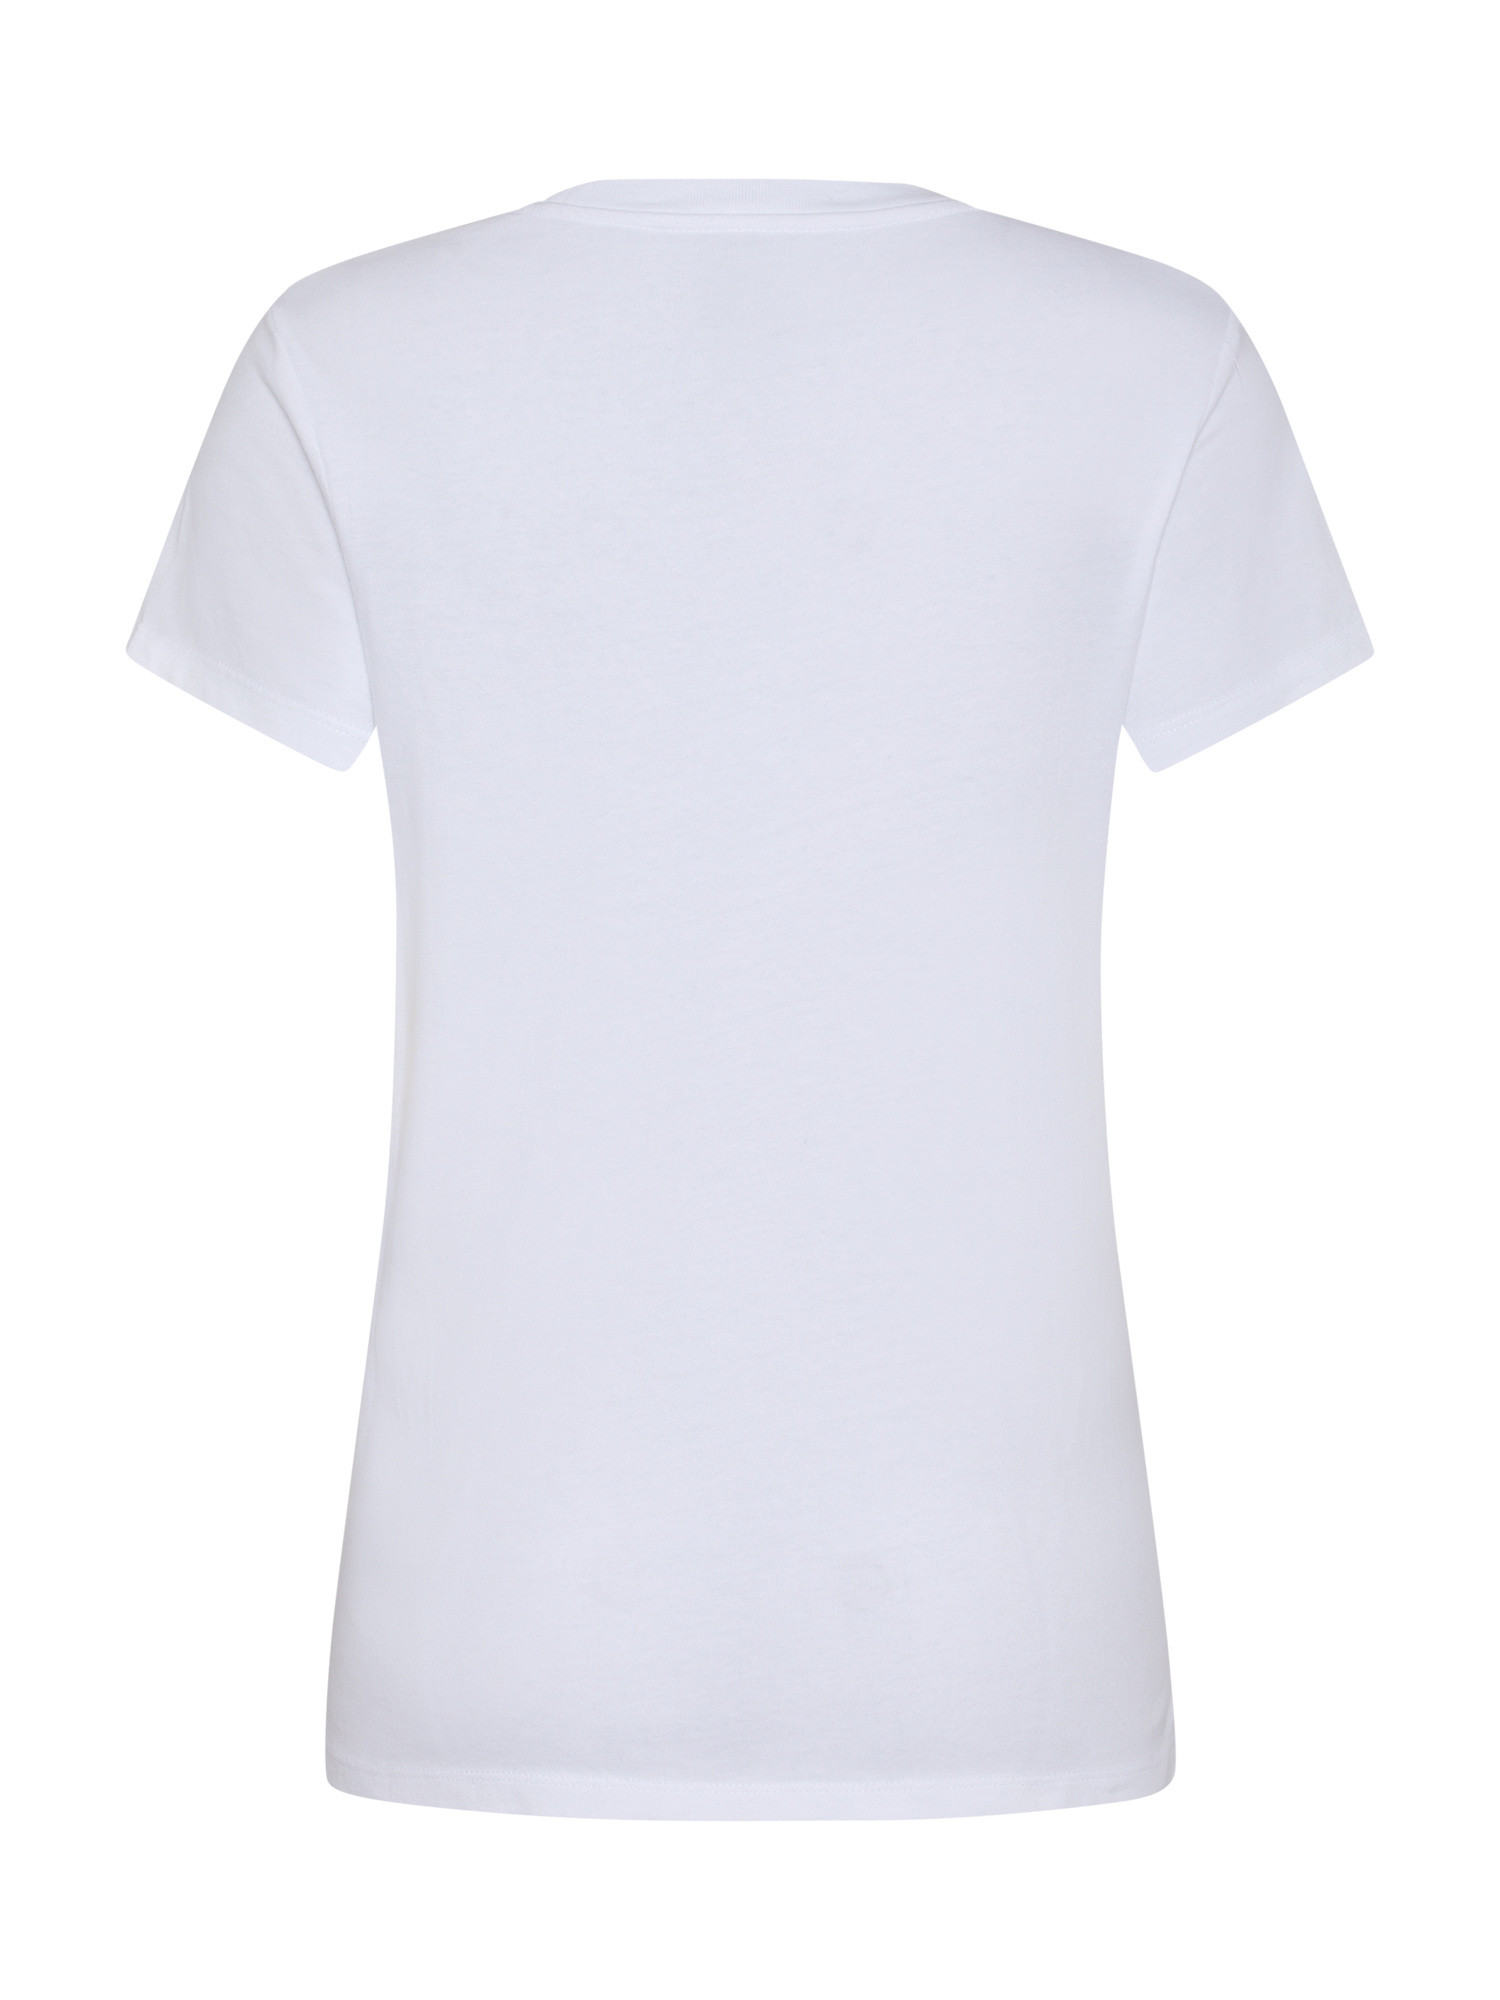 Levi's - Logo T-Shirt, White, large image number 1